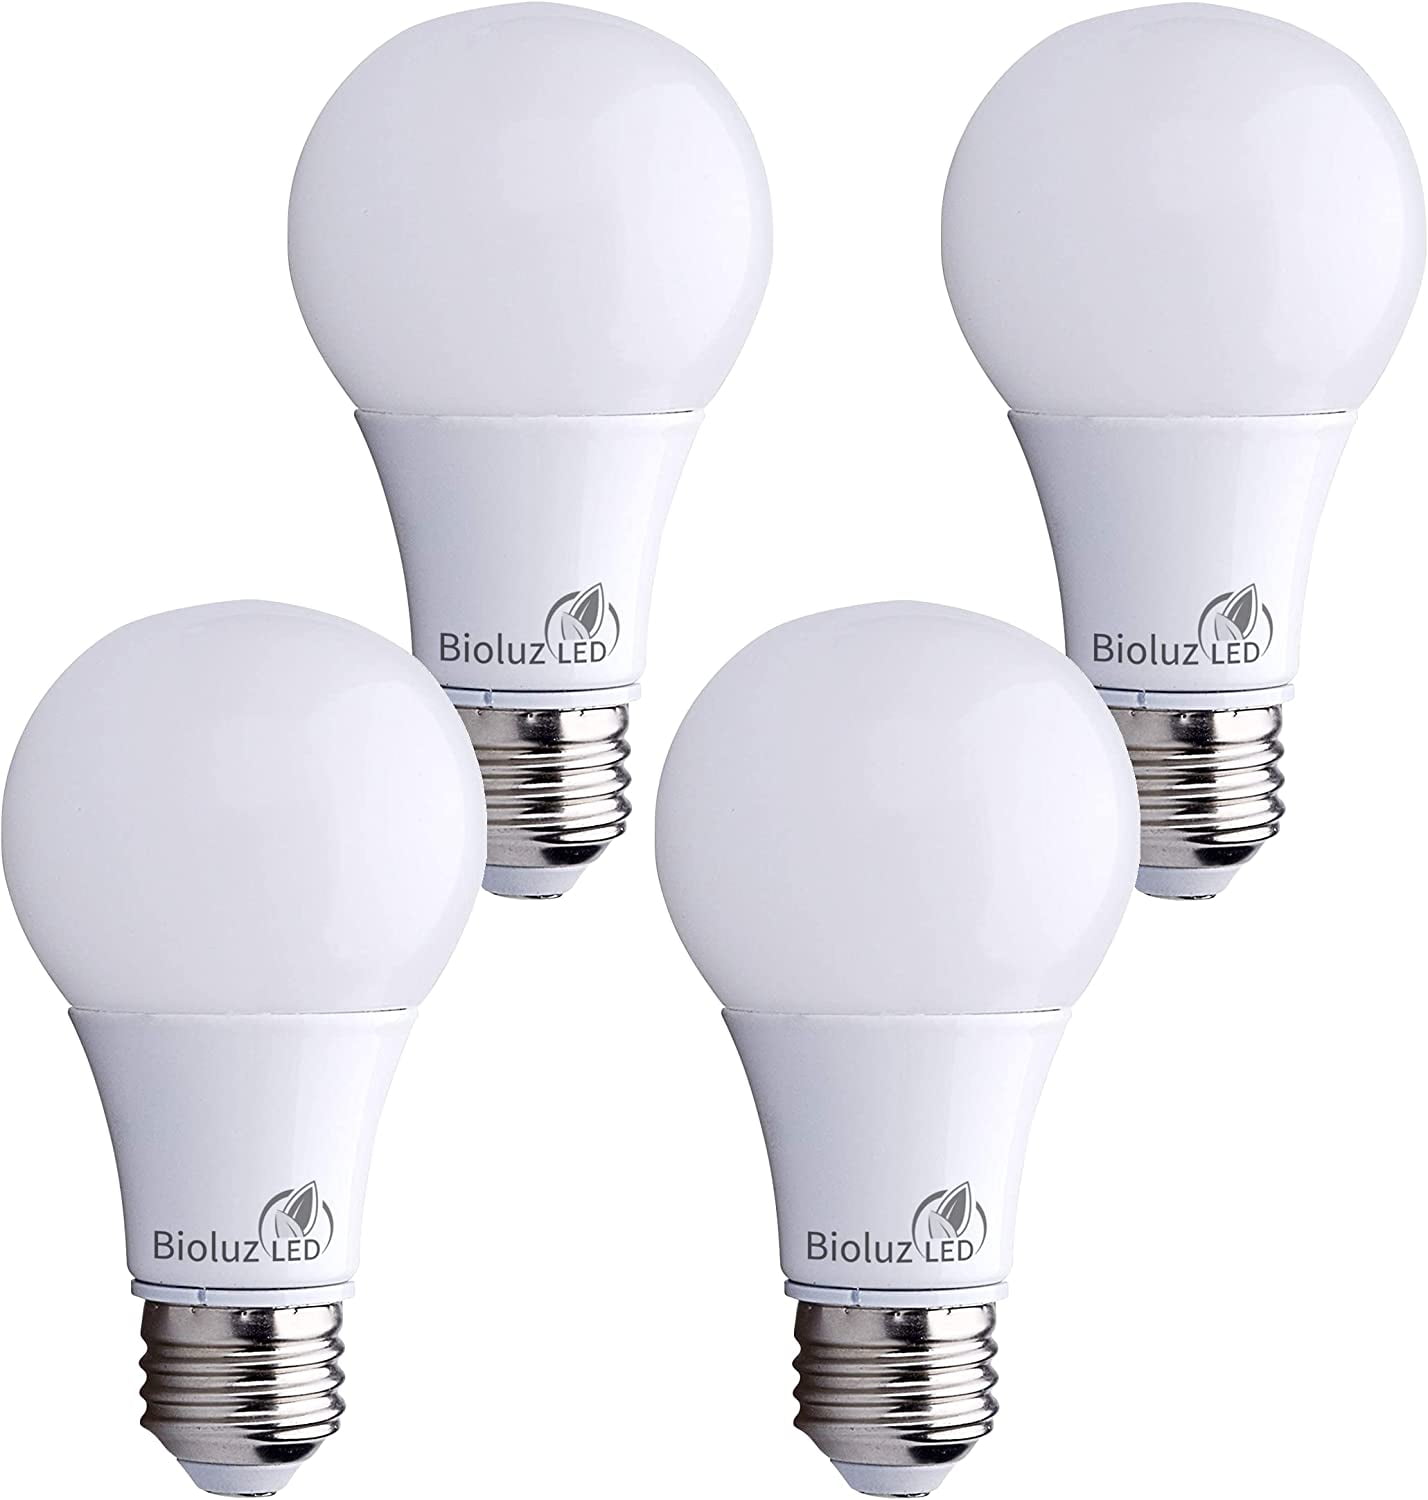 heilige Voel me slecht Proberen 100W Dimmable LED Light Bulbs, Soft White 3000K, A19 LED Light Bulb 1500  Lumen - 4 Pack - Walmart.com